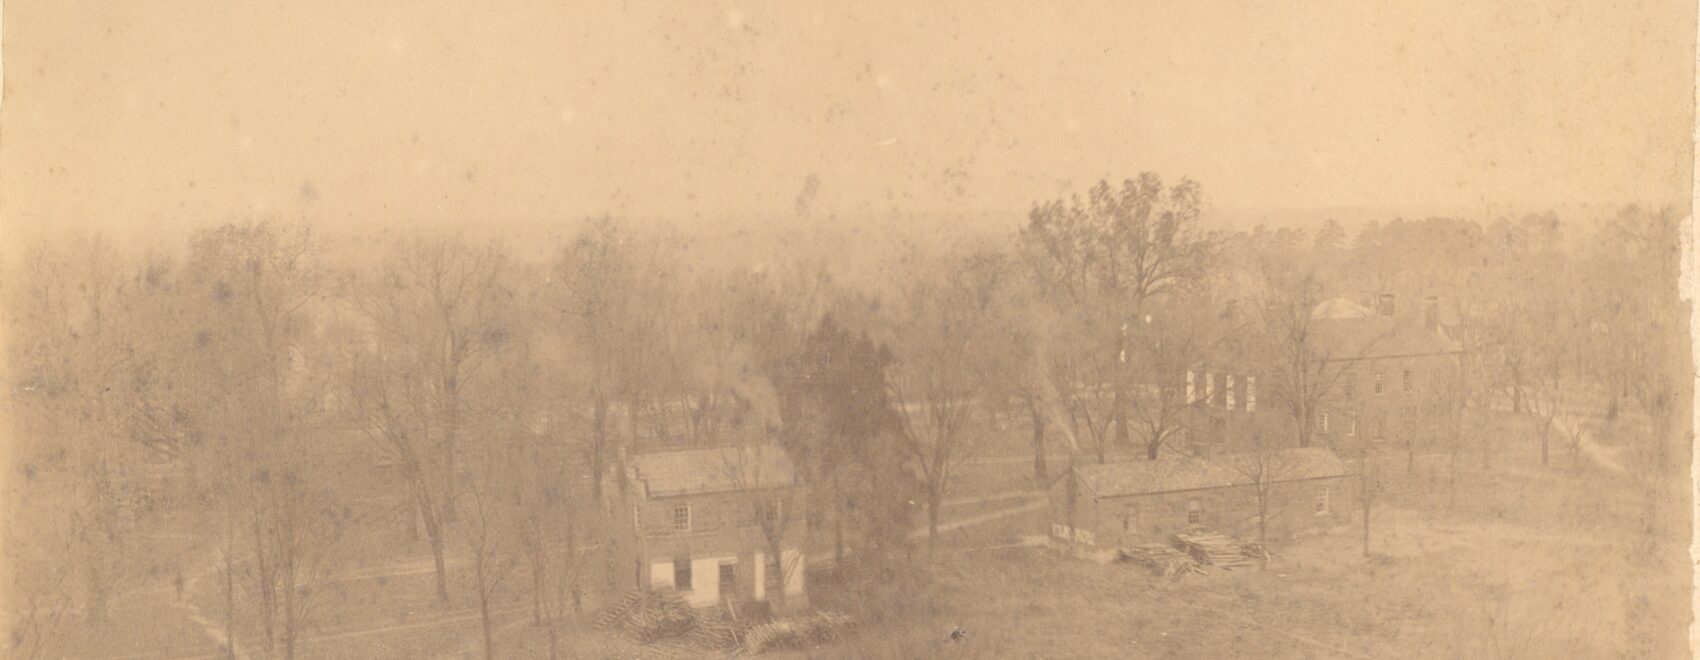 Davidson College Campus circa 1893